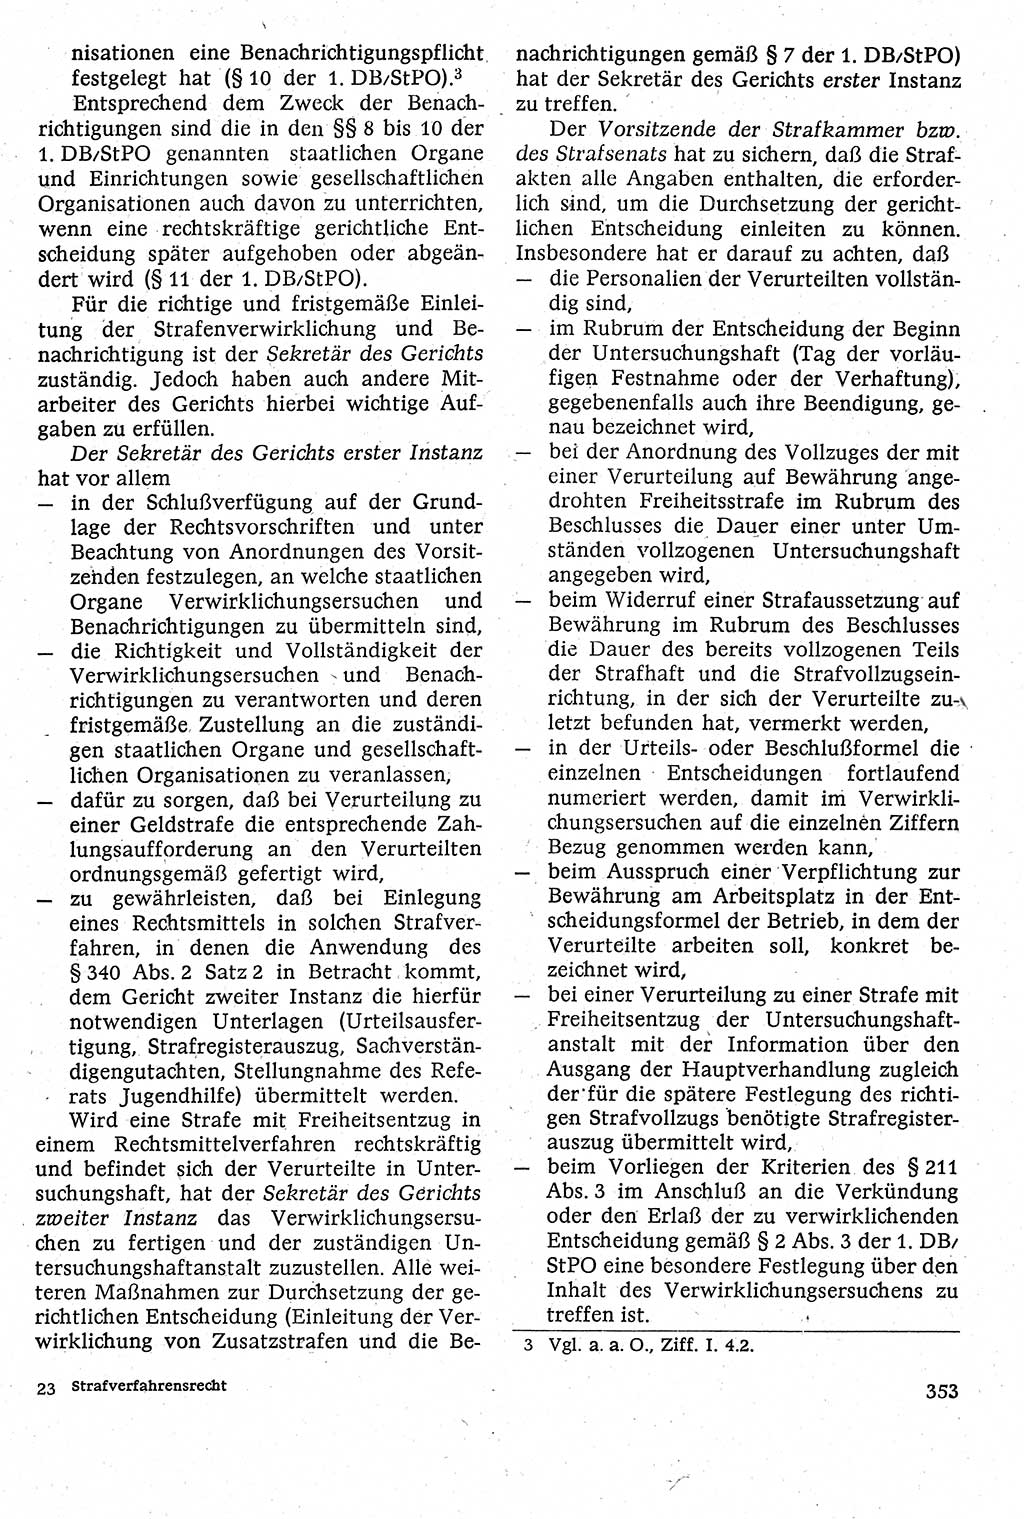 Strafverfahrensrecht [Deutsche Demokratische Republik (DDR)], Lehrbuch 1982, Seite 353 (Strafverf.-R. DDR Lb. 1982, S. 353)